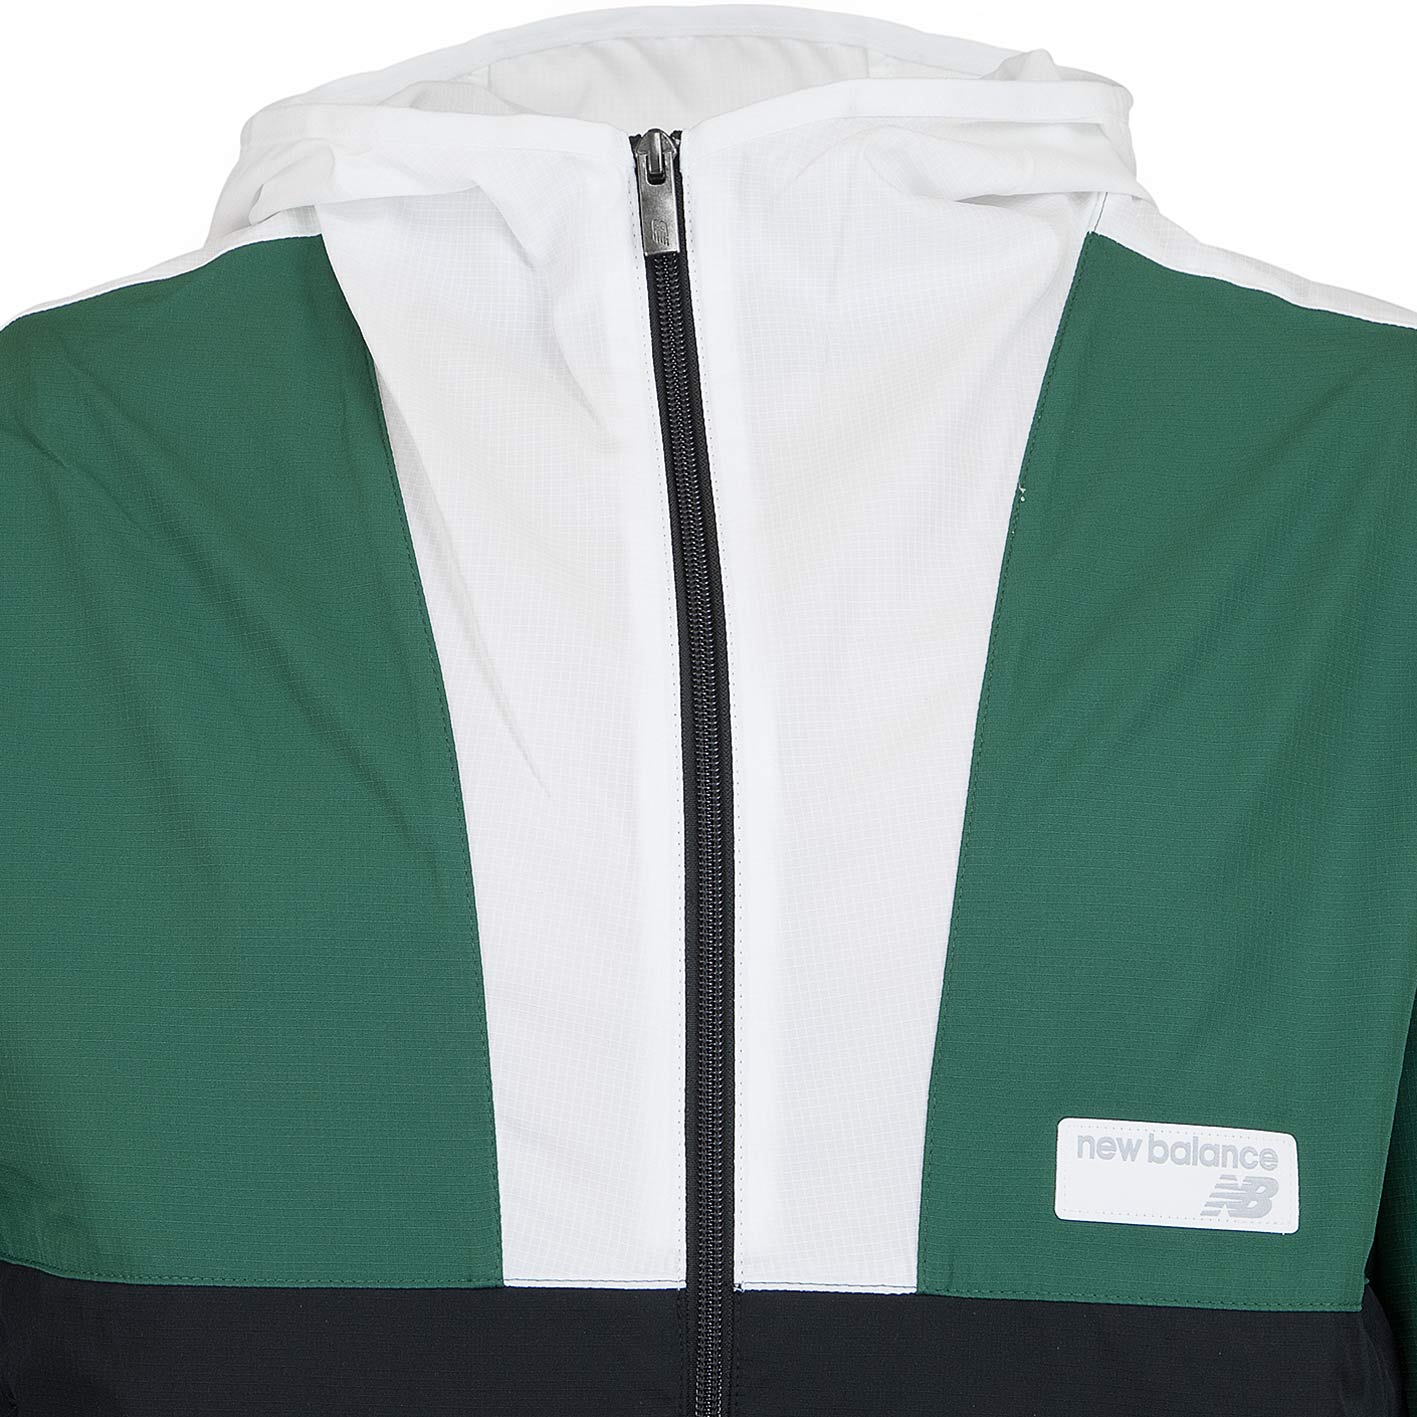 ☆ New Balance Jacke Athletics grün/schwarz/weiß - hier bestellen!